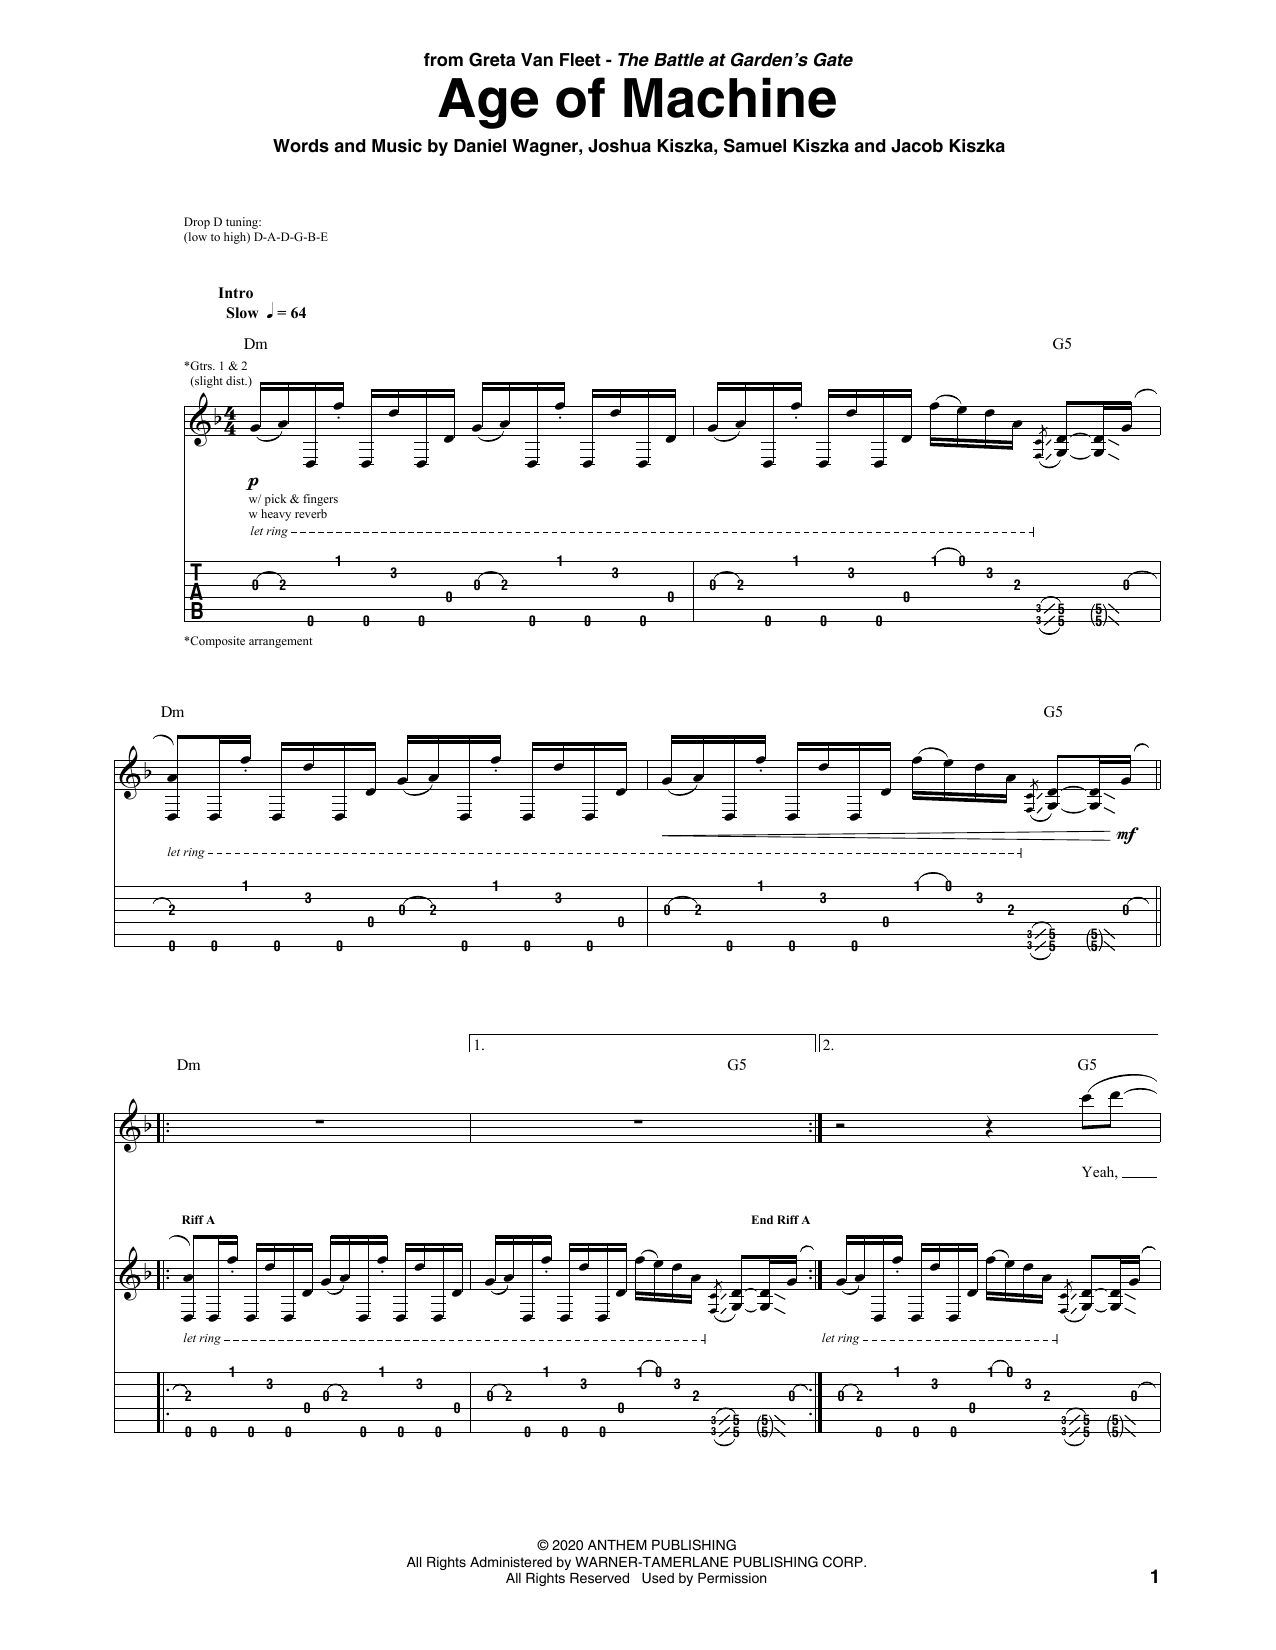 Greta Van Fleet Age Of Machine Sheet Music Notes & Chords for Guitar Tab - Download or Print PDF